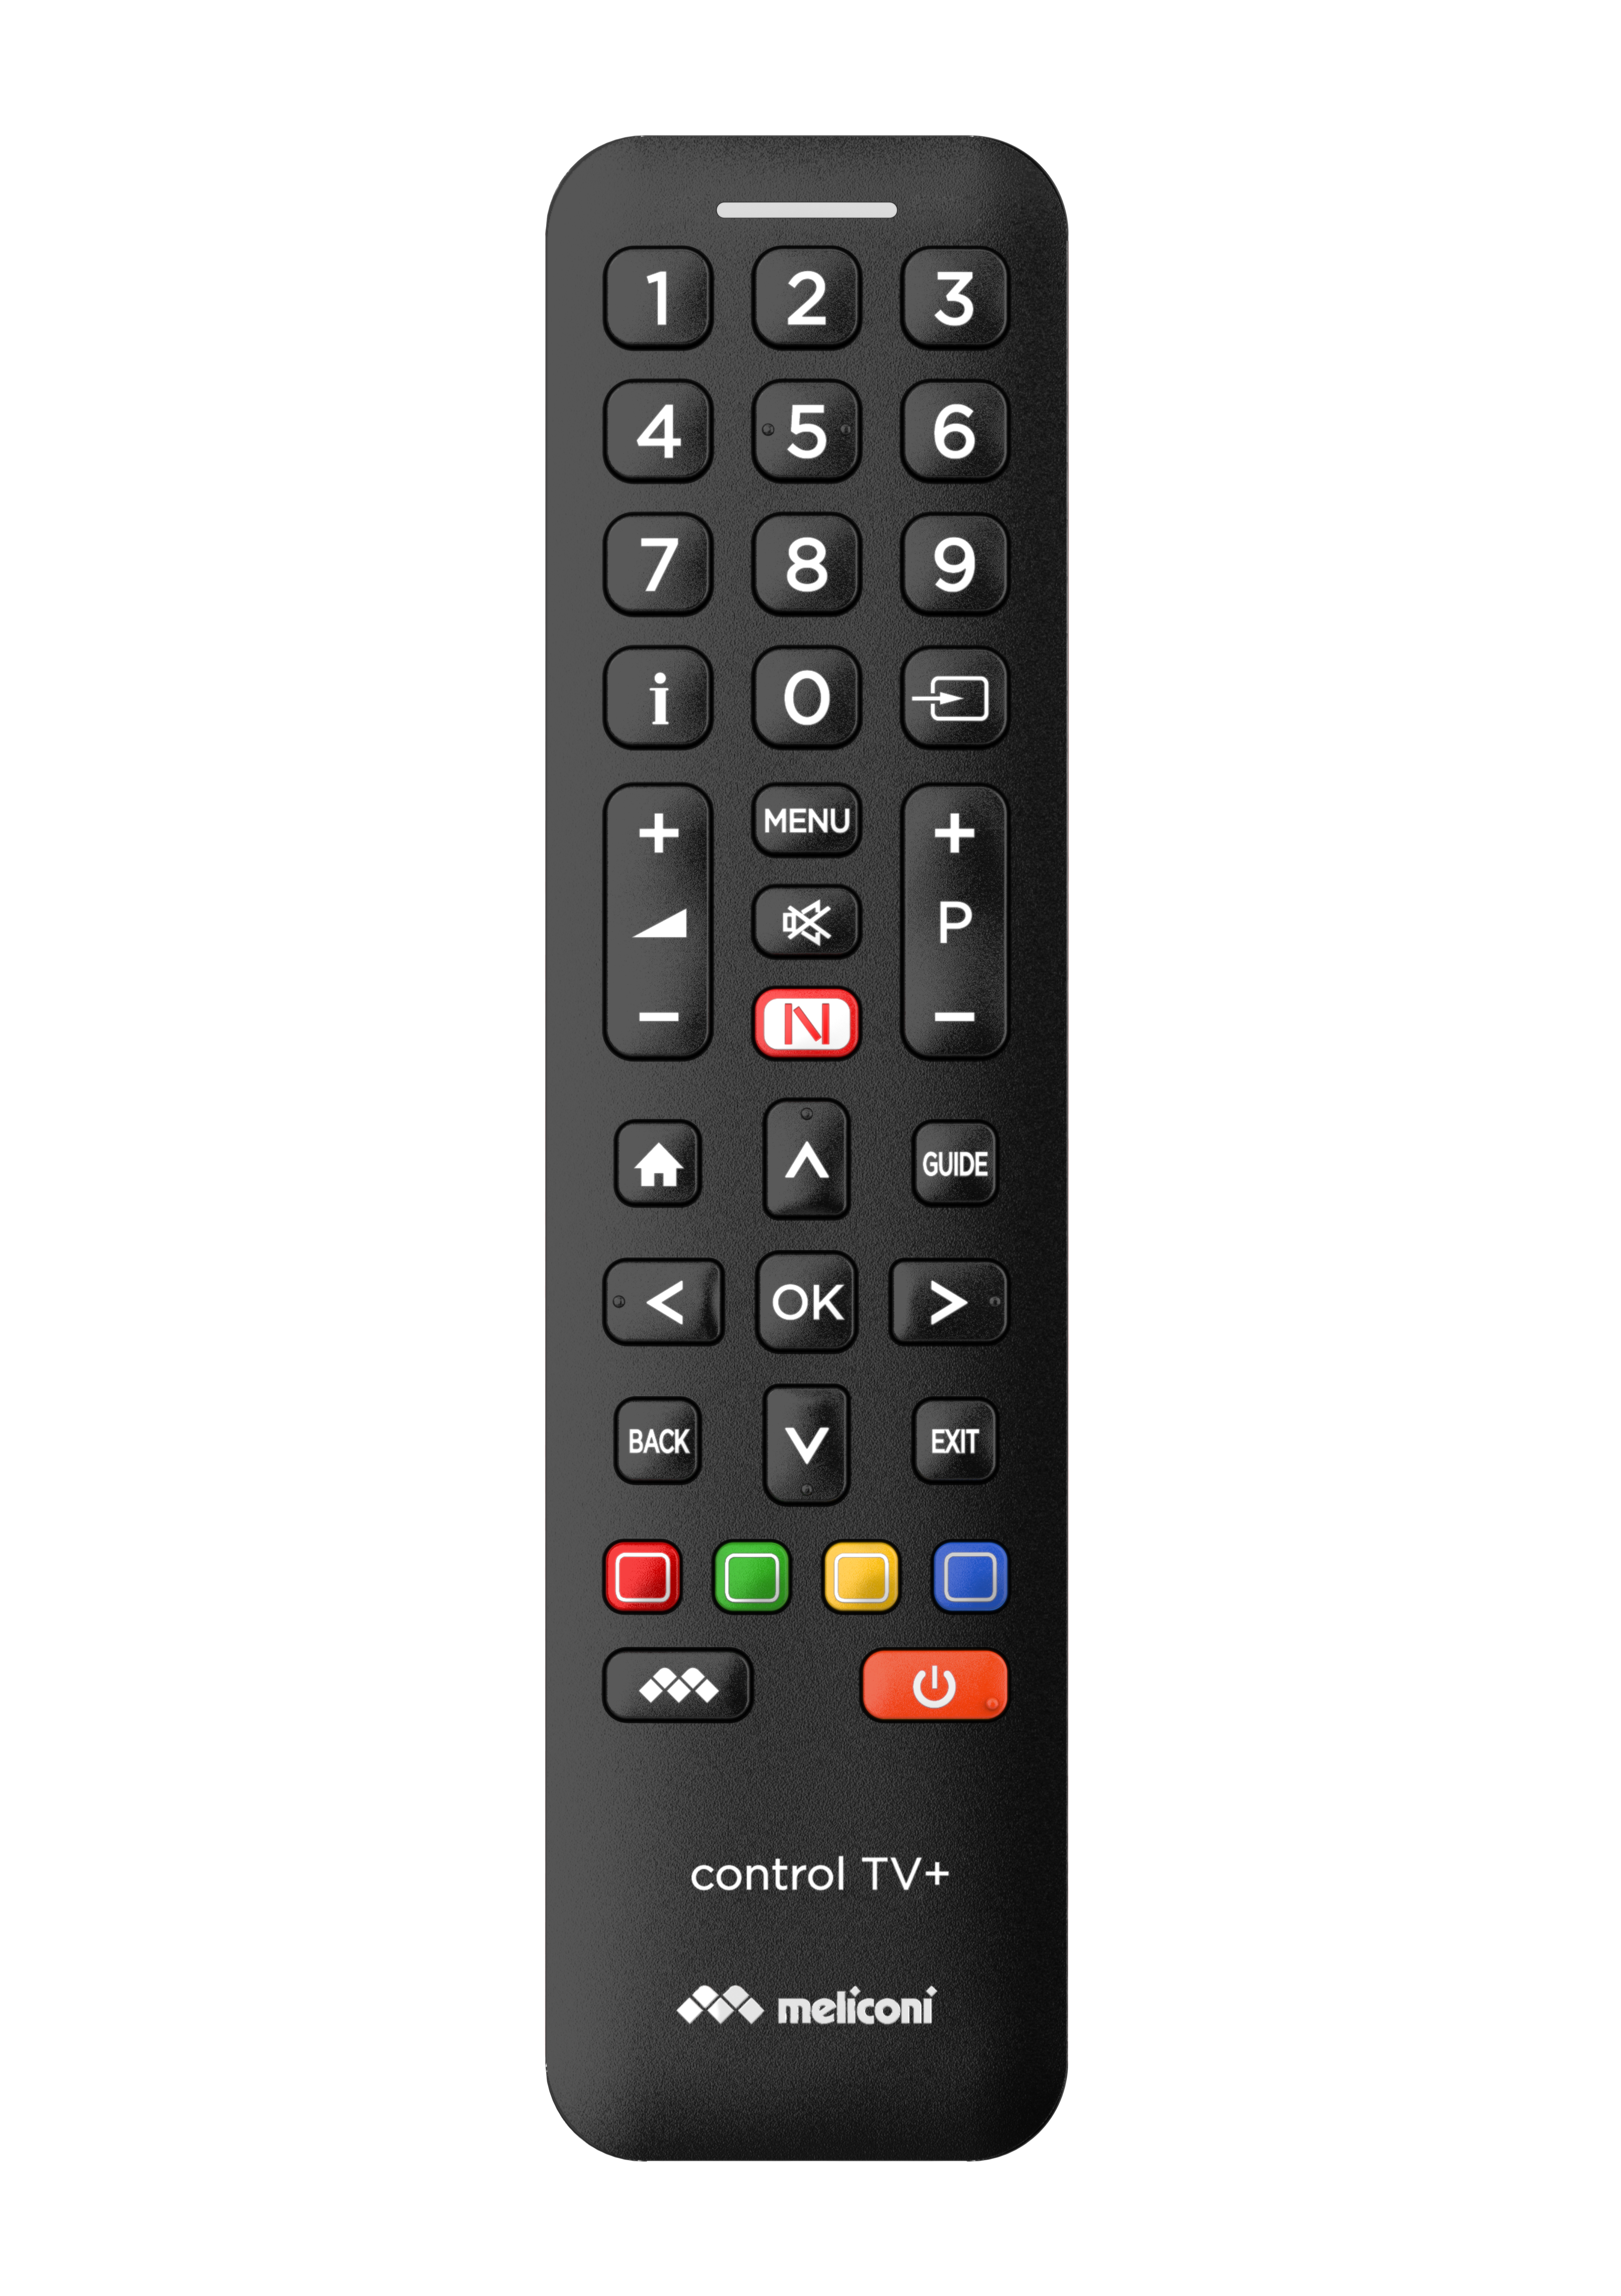 Control TV+